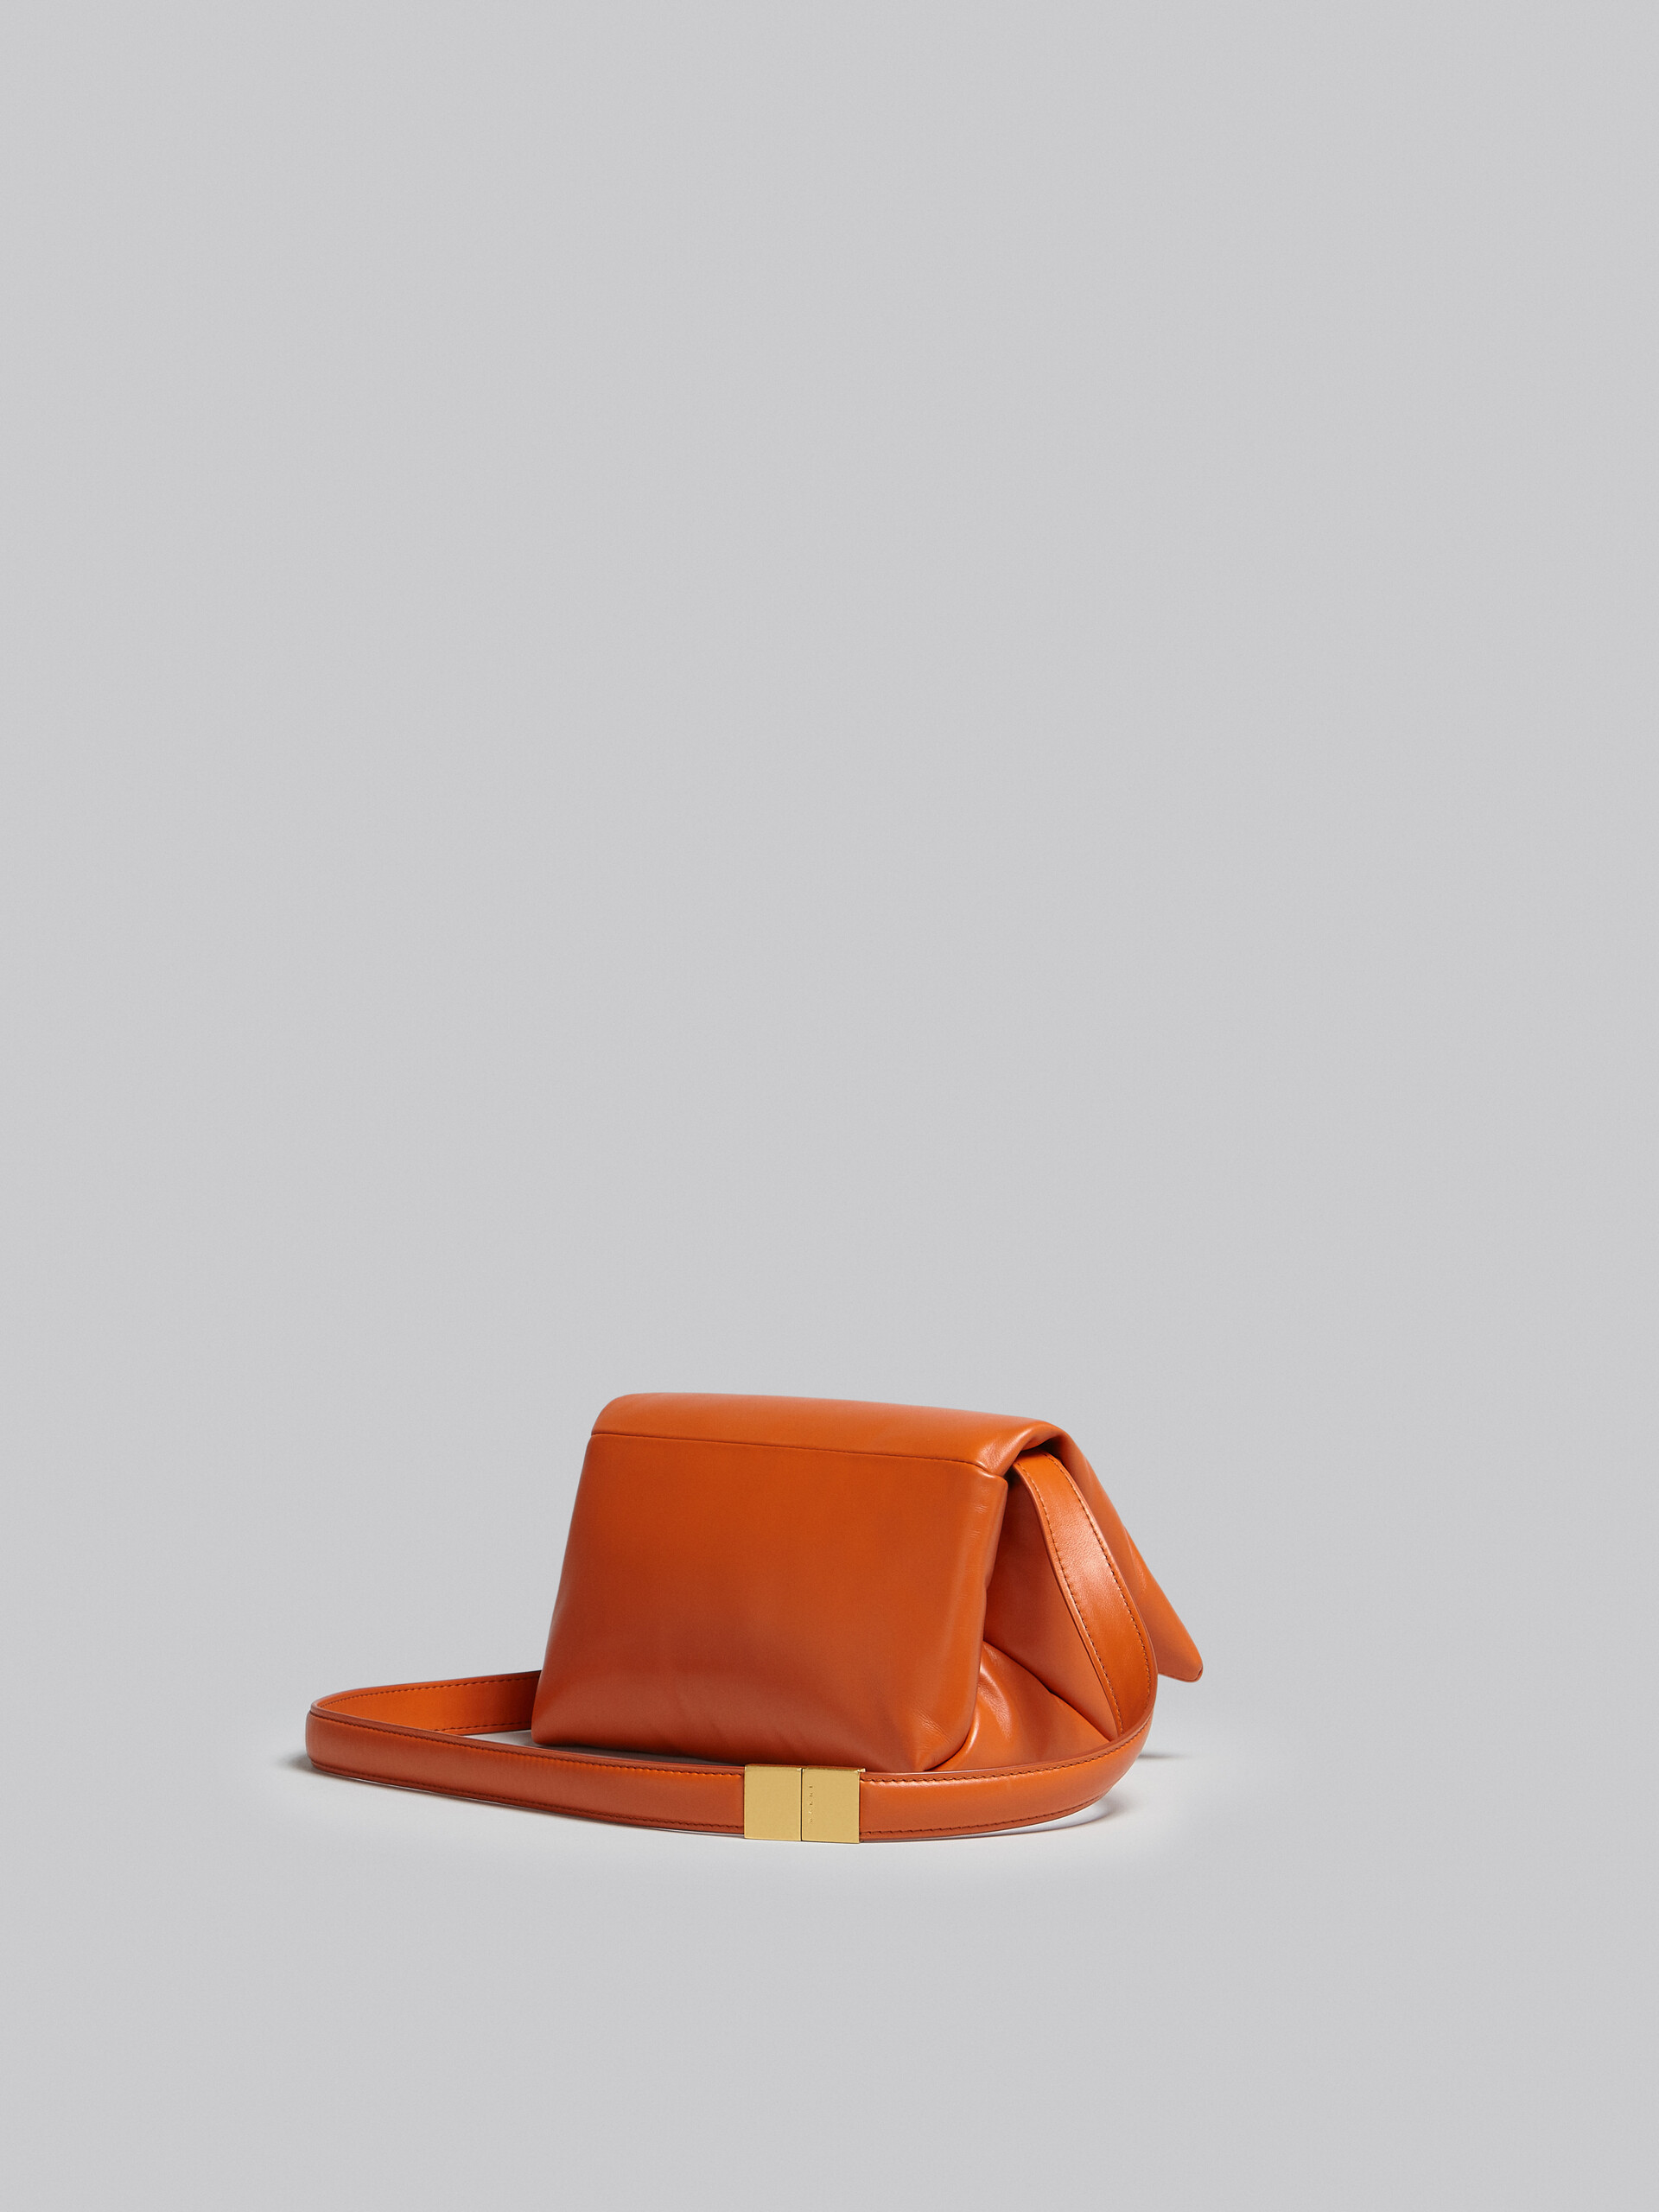 Small orange calsfkin Prisma bag - Shoulder Bag - Image 3